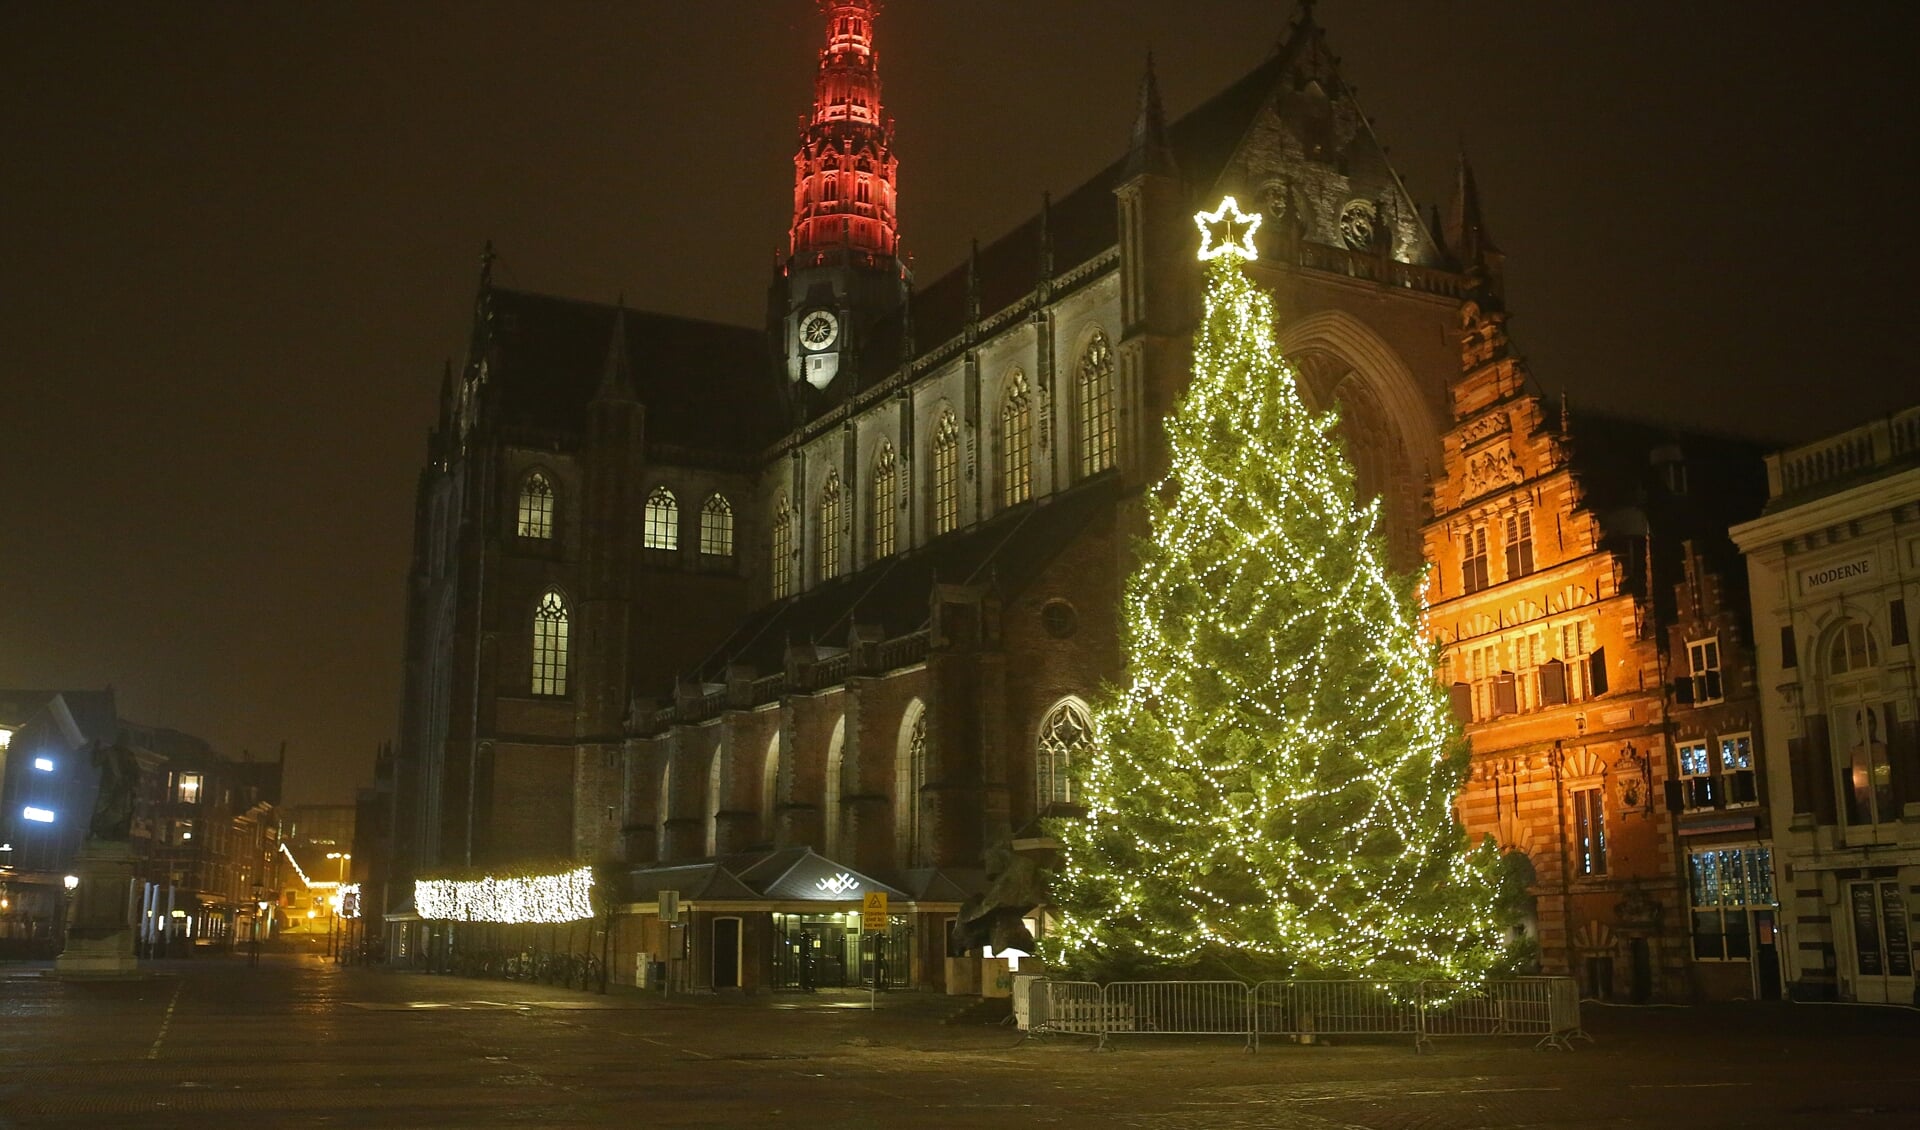 De kerstboom staat vanaf 6 december weer in volle glorie op de Grote Markt!